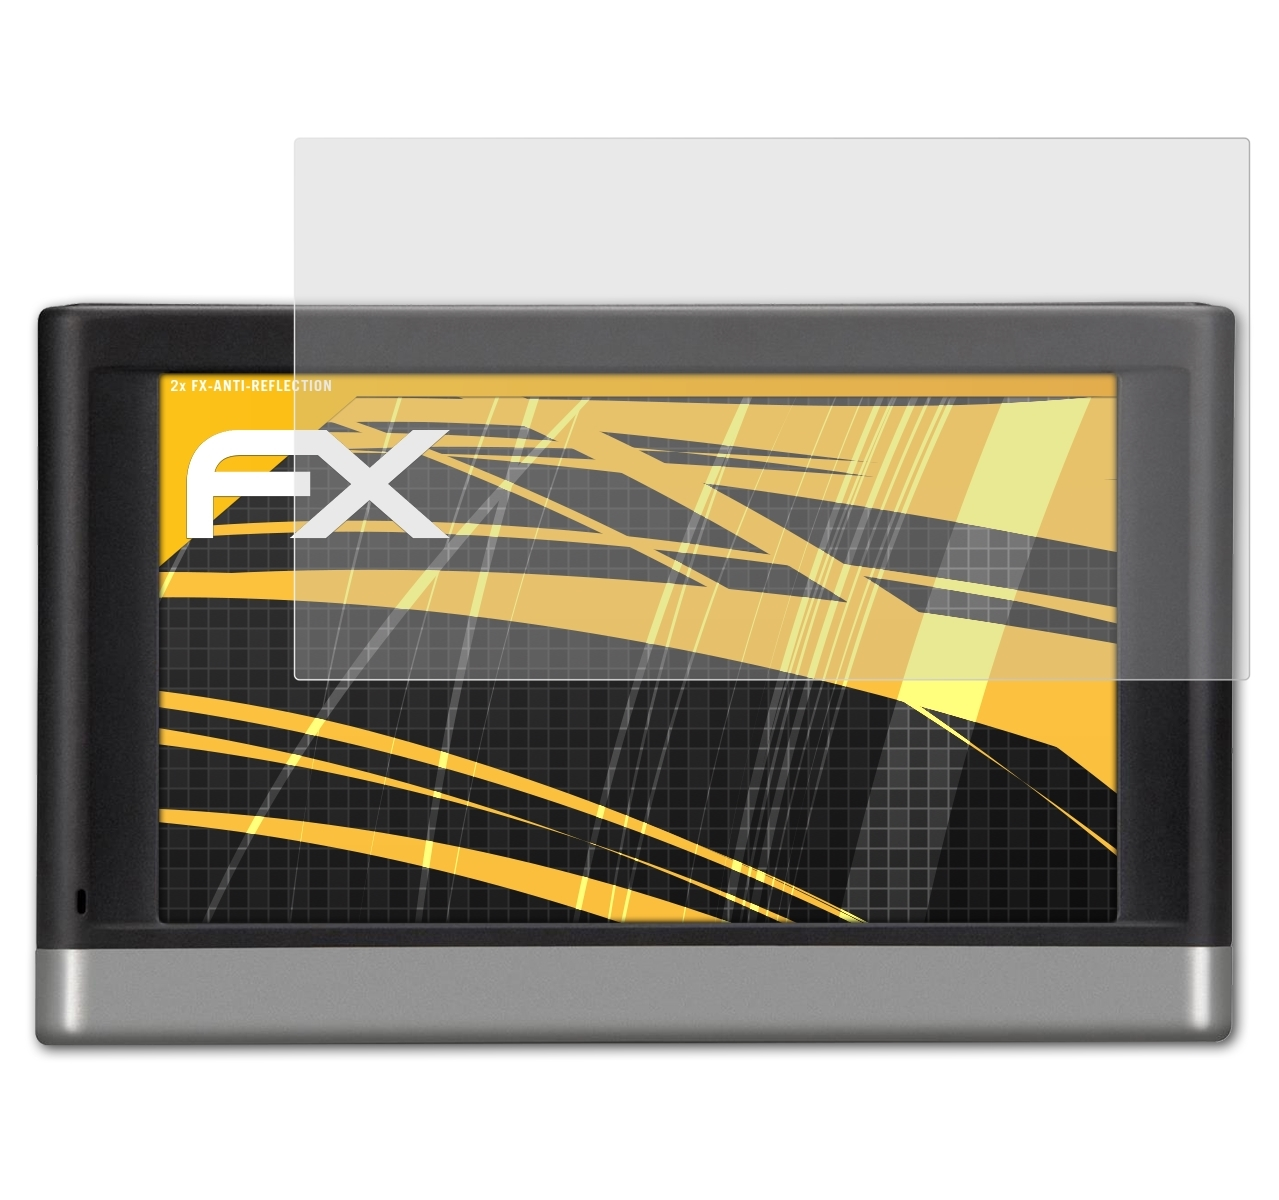 ATFOLIX 2x nüvi FX-Antireflex Garmin 2567) Displayschutz(für